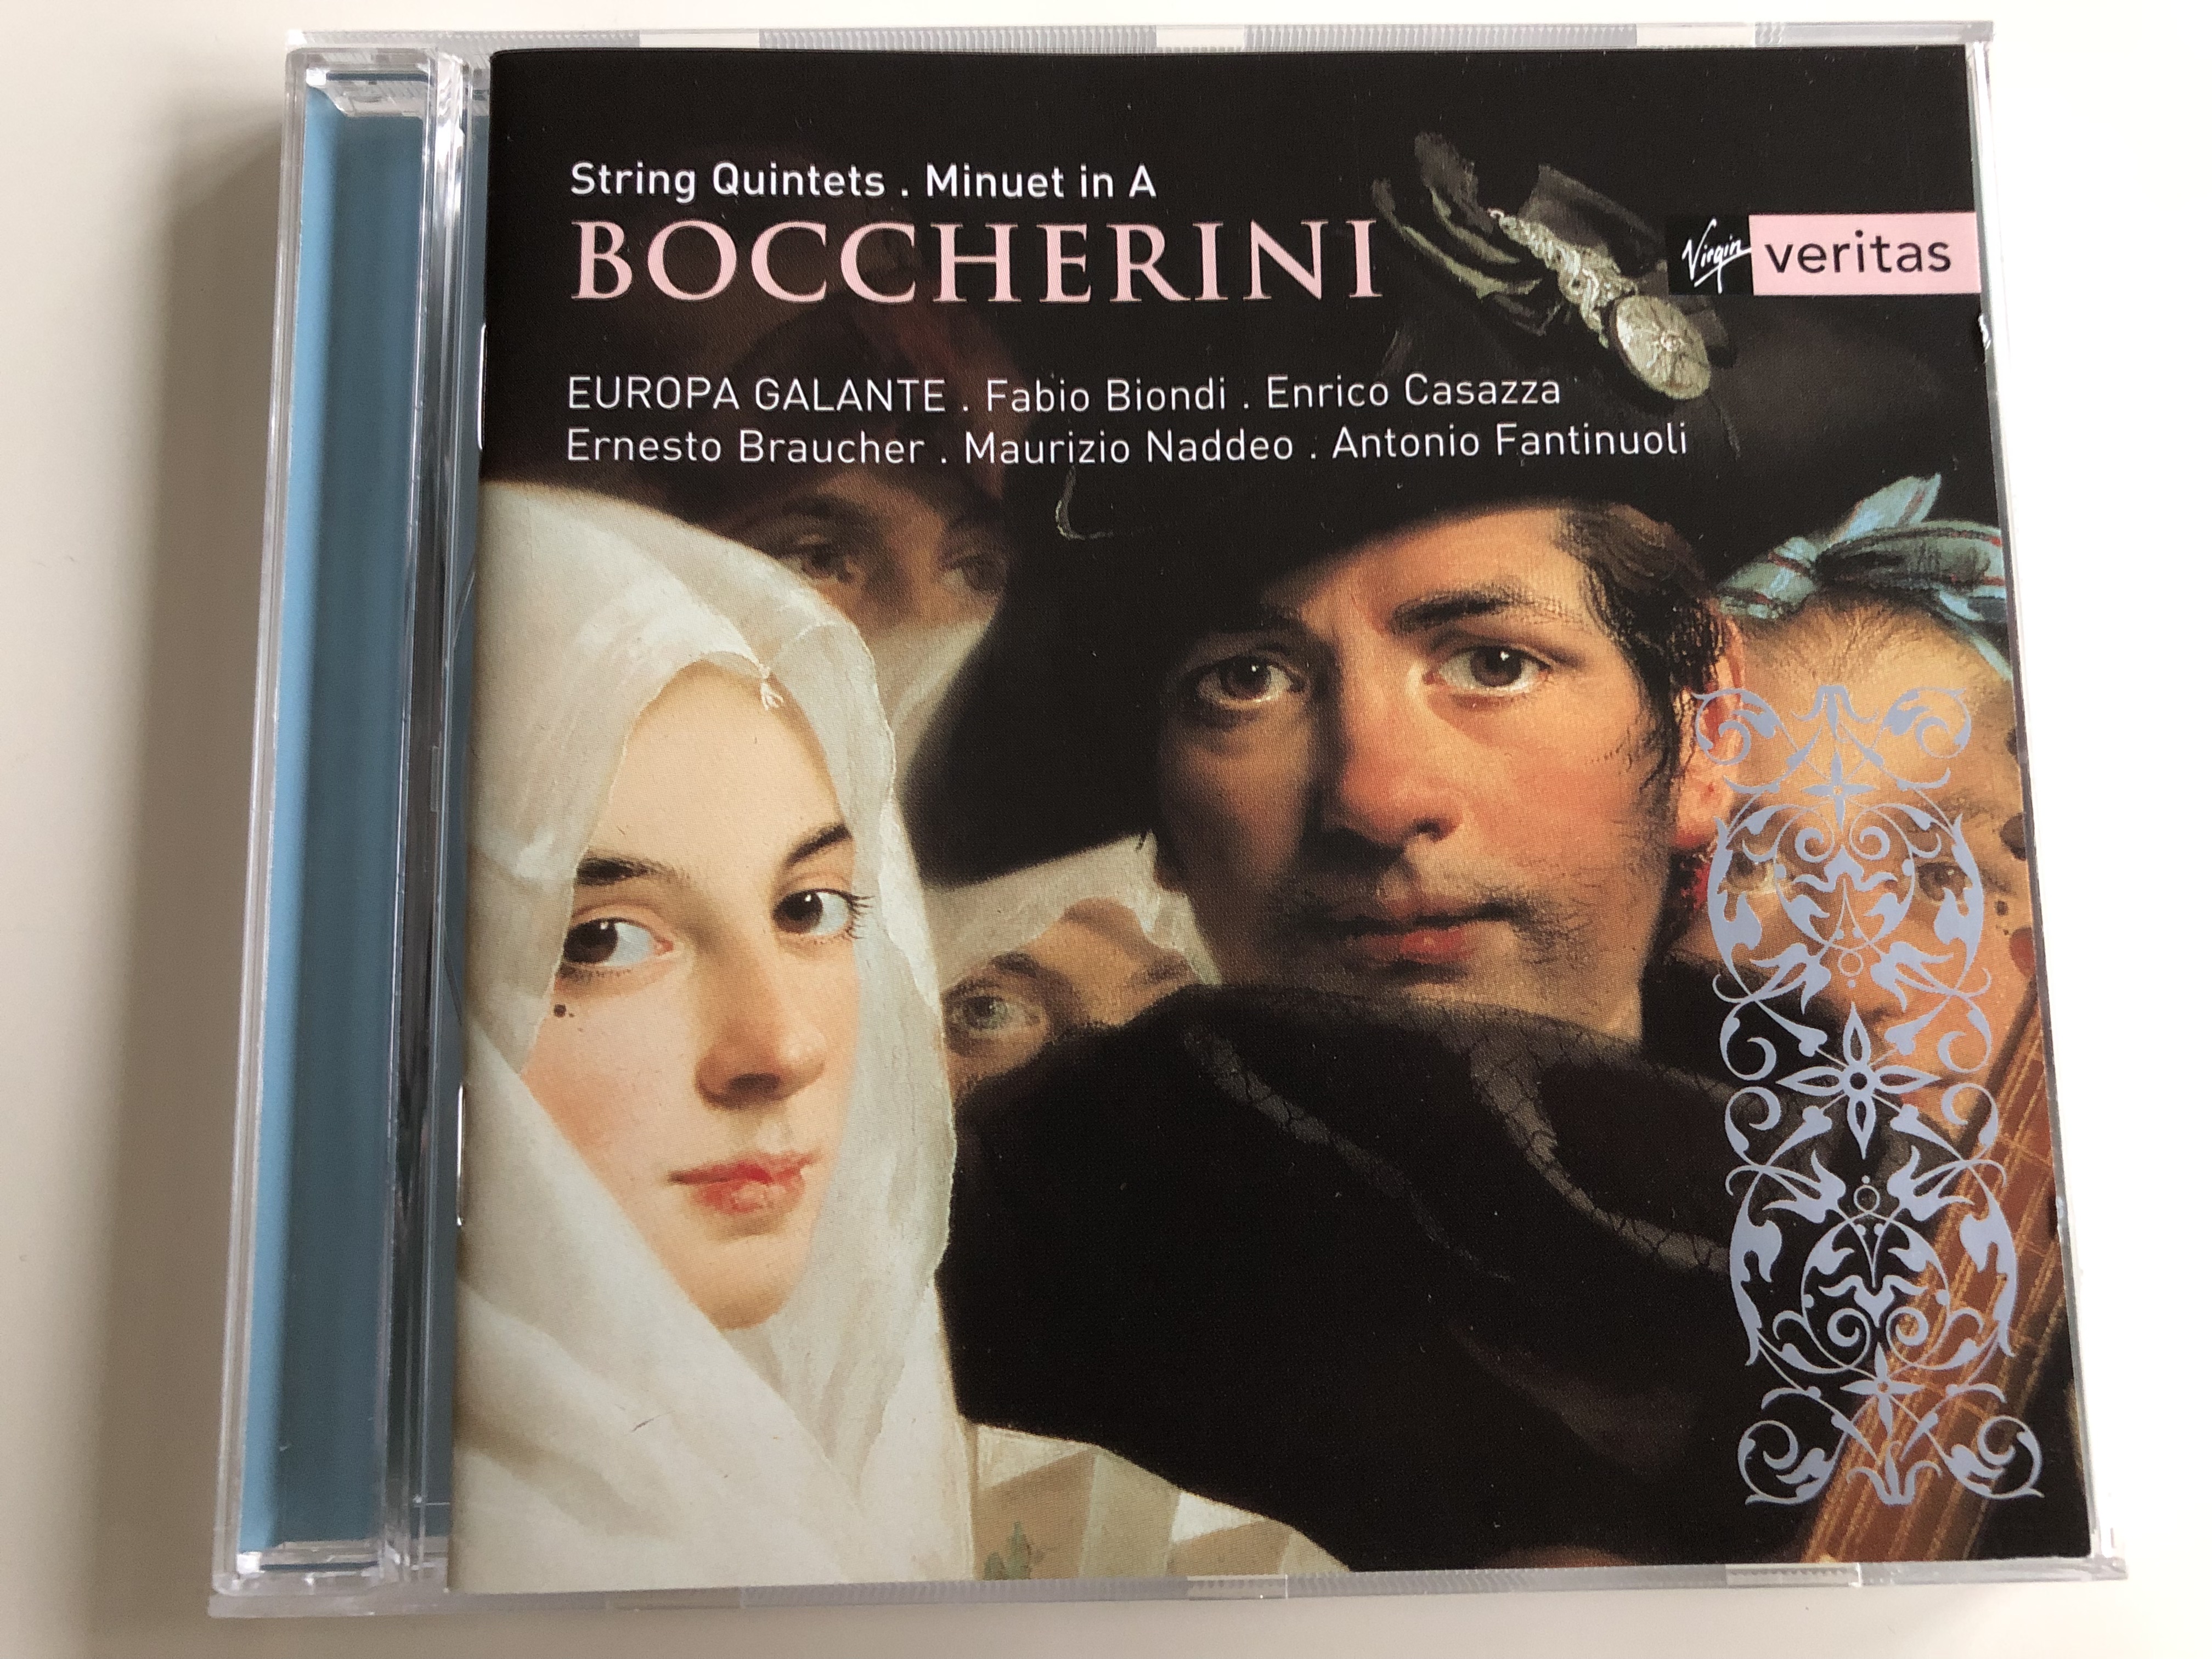 boccherini-string-quintets-minuet-in-a-europa-galante-fabio-biondi-enrico-casazza-ernesto-braucher-maurizio-naddeo-antonio-fantinuoli-audio-cd-2001-virgin-classics-1-.jpg